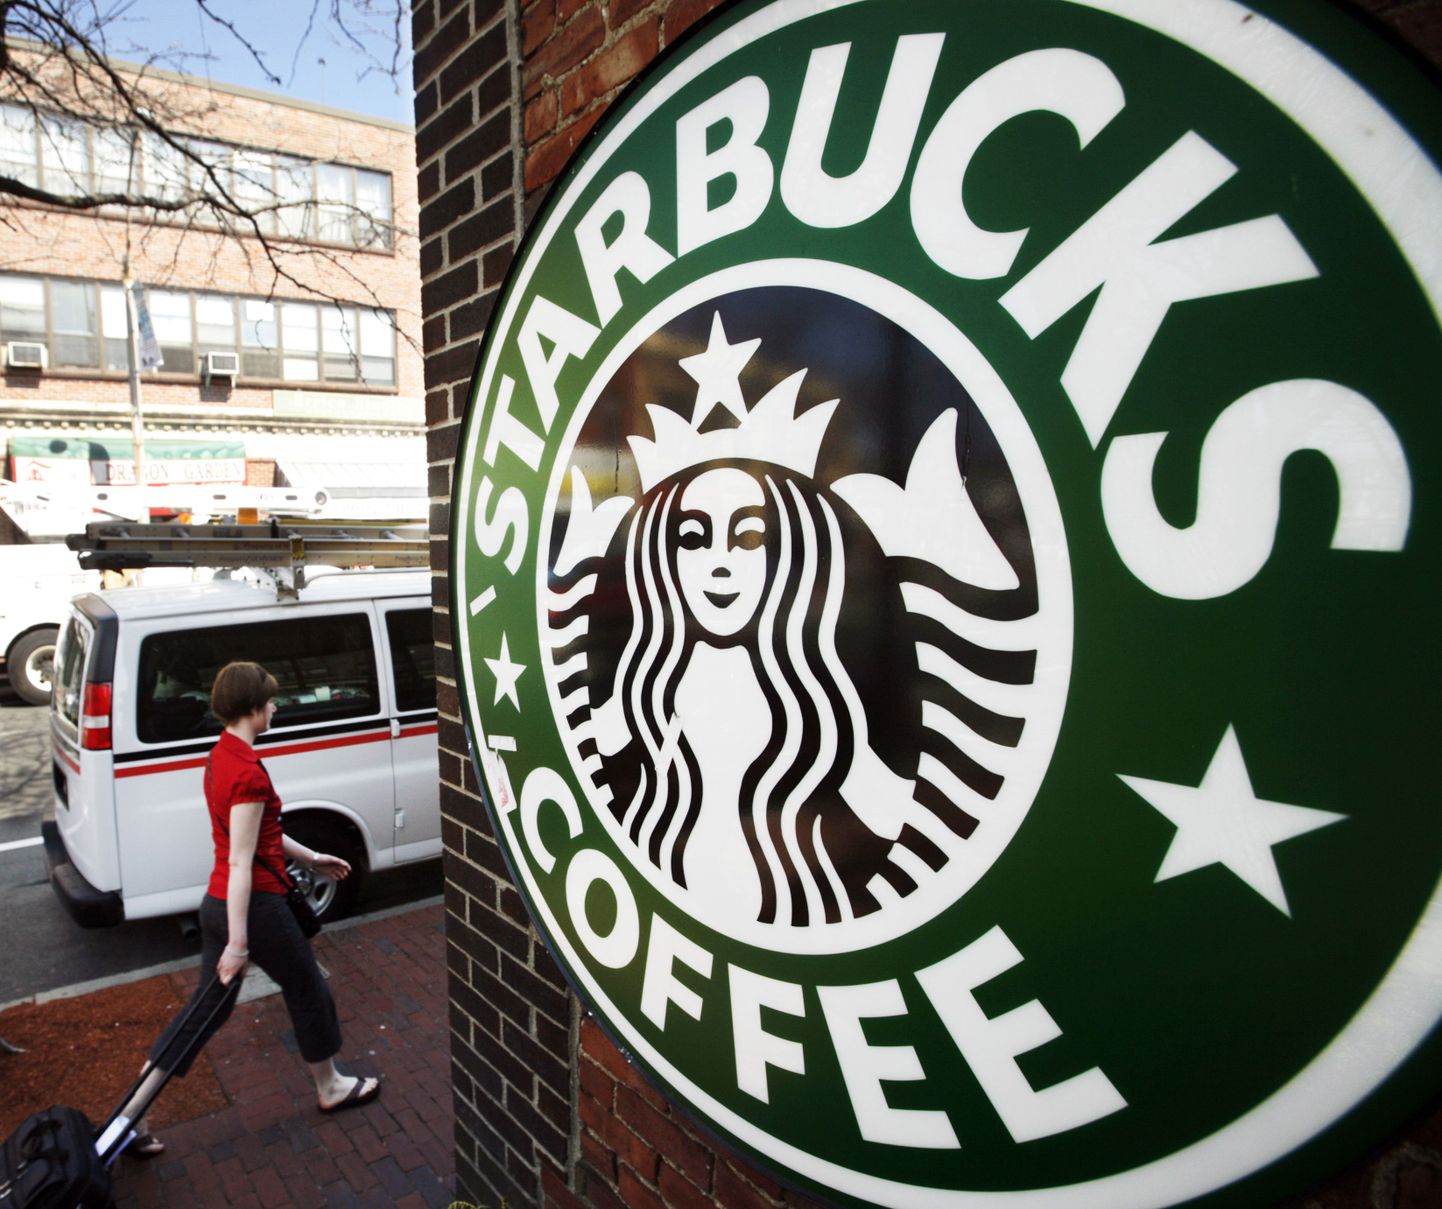 Maailmas laialt levinud ja tuntud kohvikukett Starbucks on sunnitud veel oma ridu kärpima.